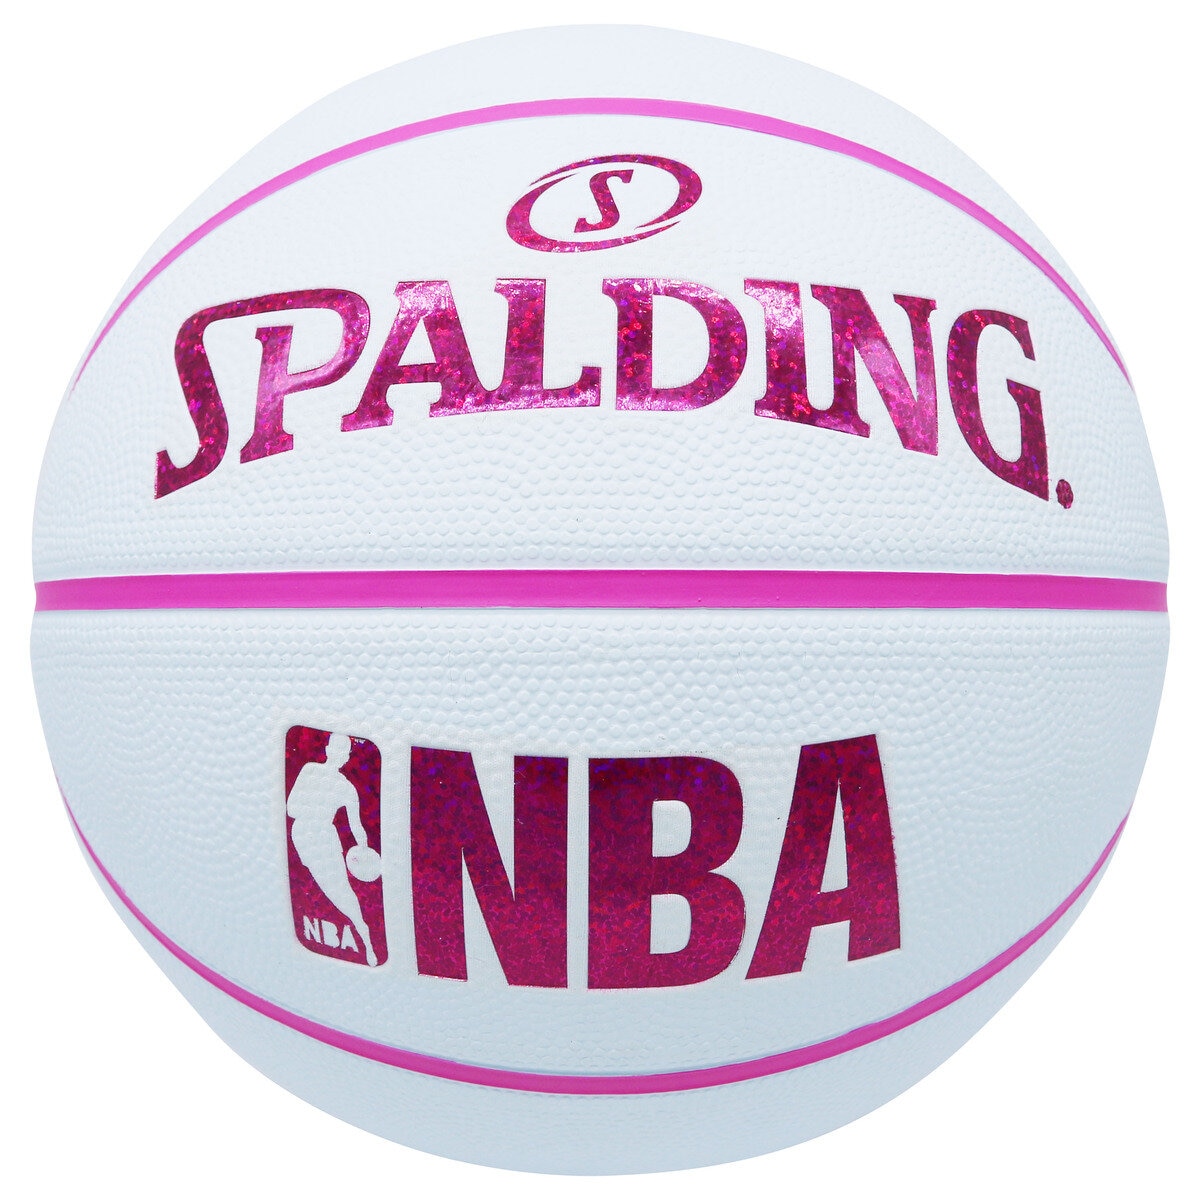 スポルディング NBA バスケットボール ホログラム ホワイト/レッド ラバー 5号球 84-351J